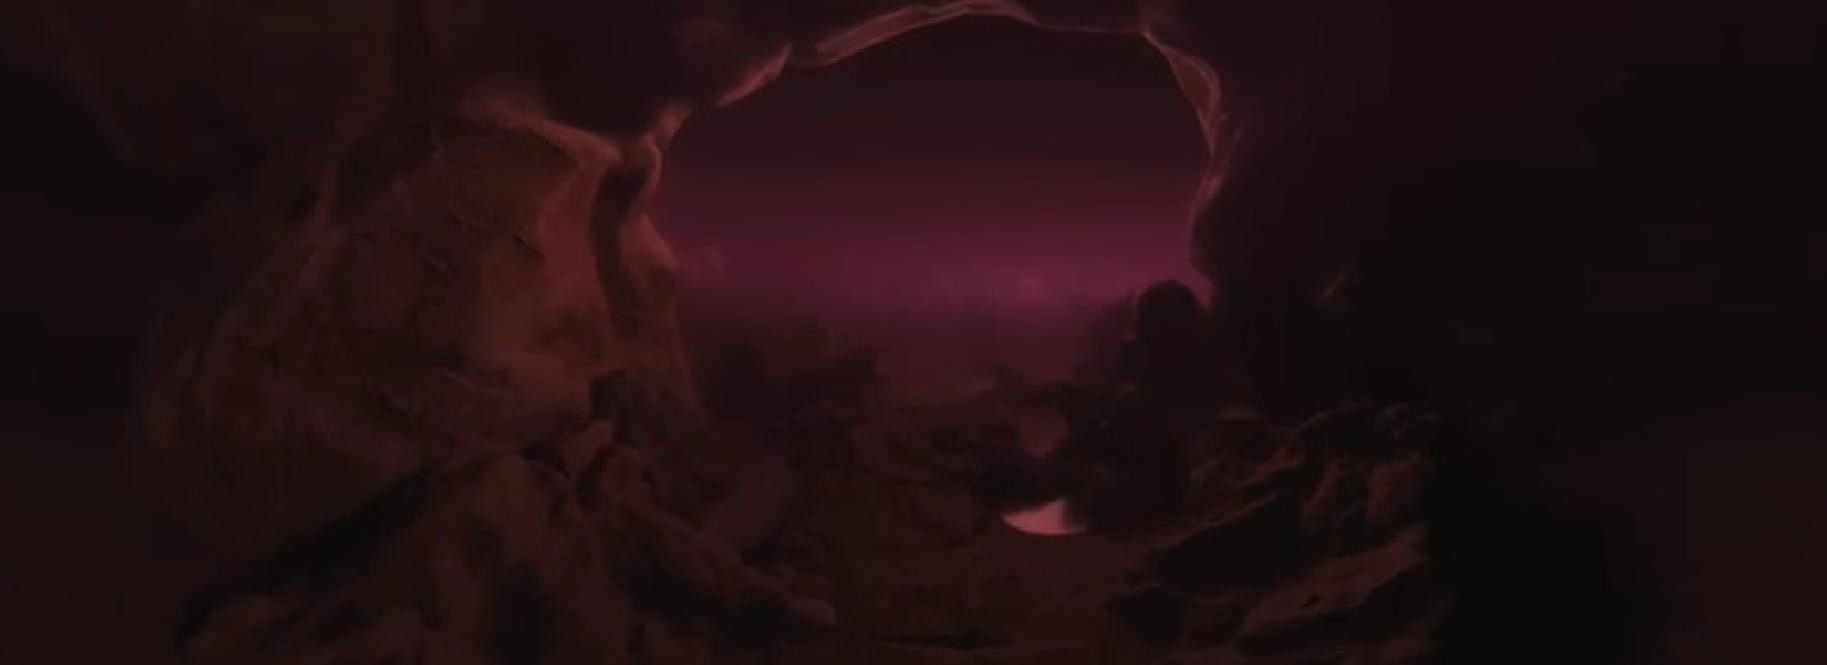 La selva oscura in Dante VR